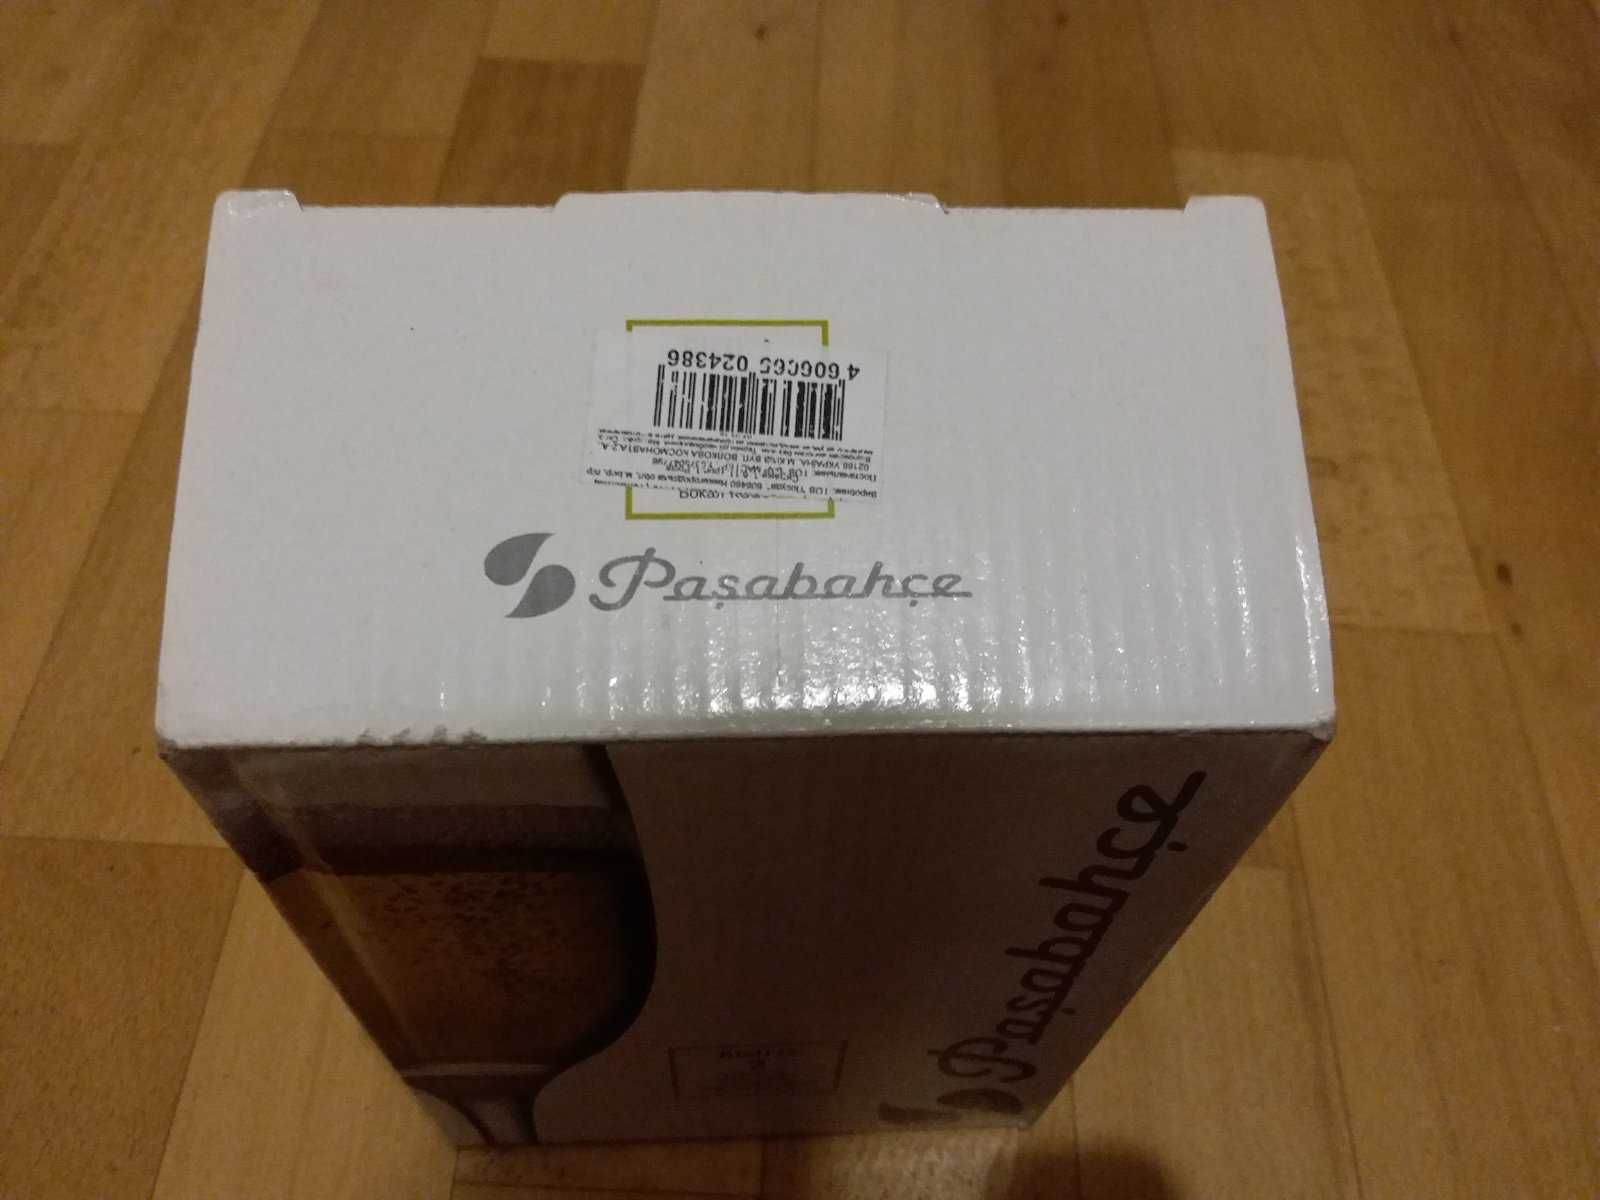 Продам бокалы для шампанского в упаковке (Pasabahce 2 шт.) 100 грн.